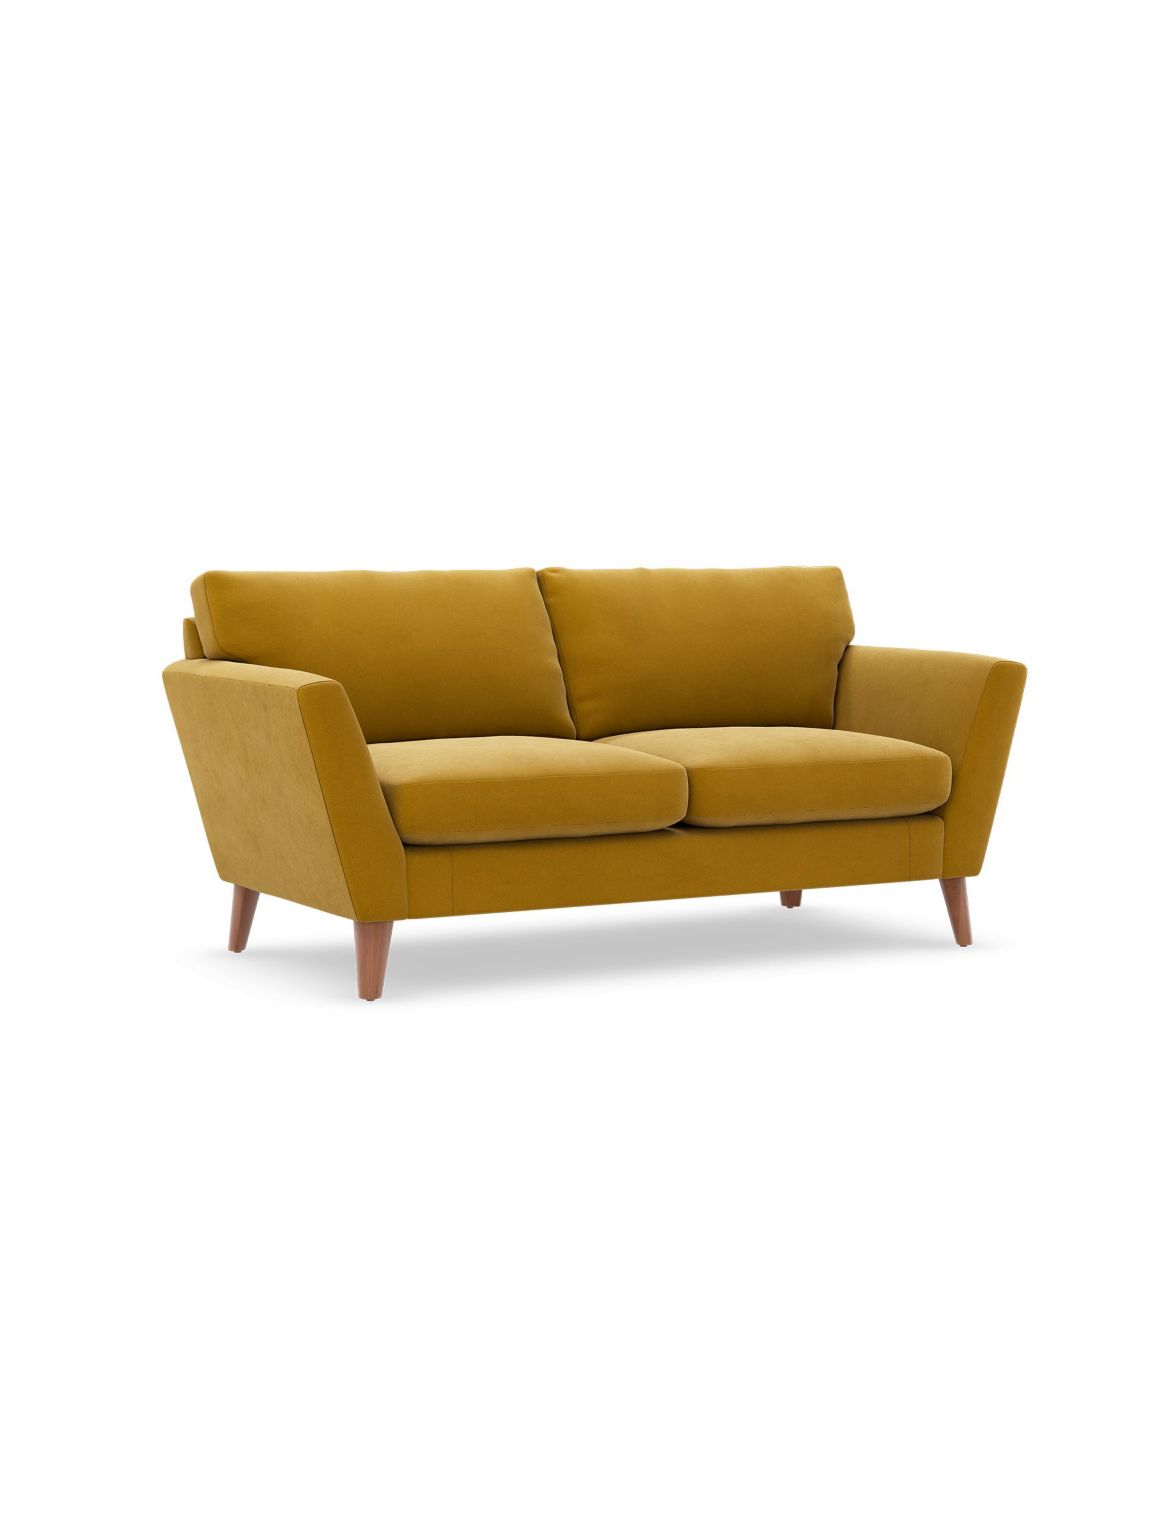 Foxbury Medium Sofa yellow